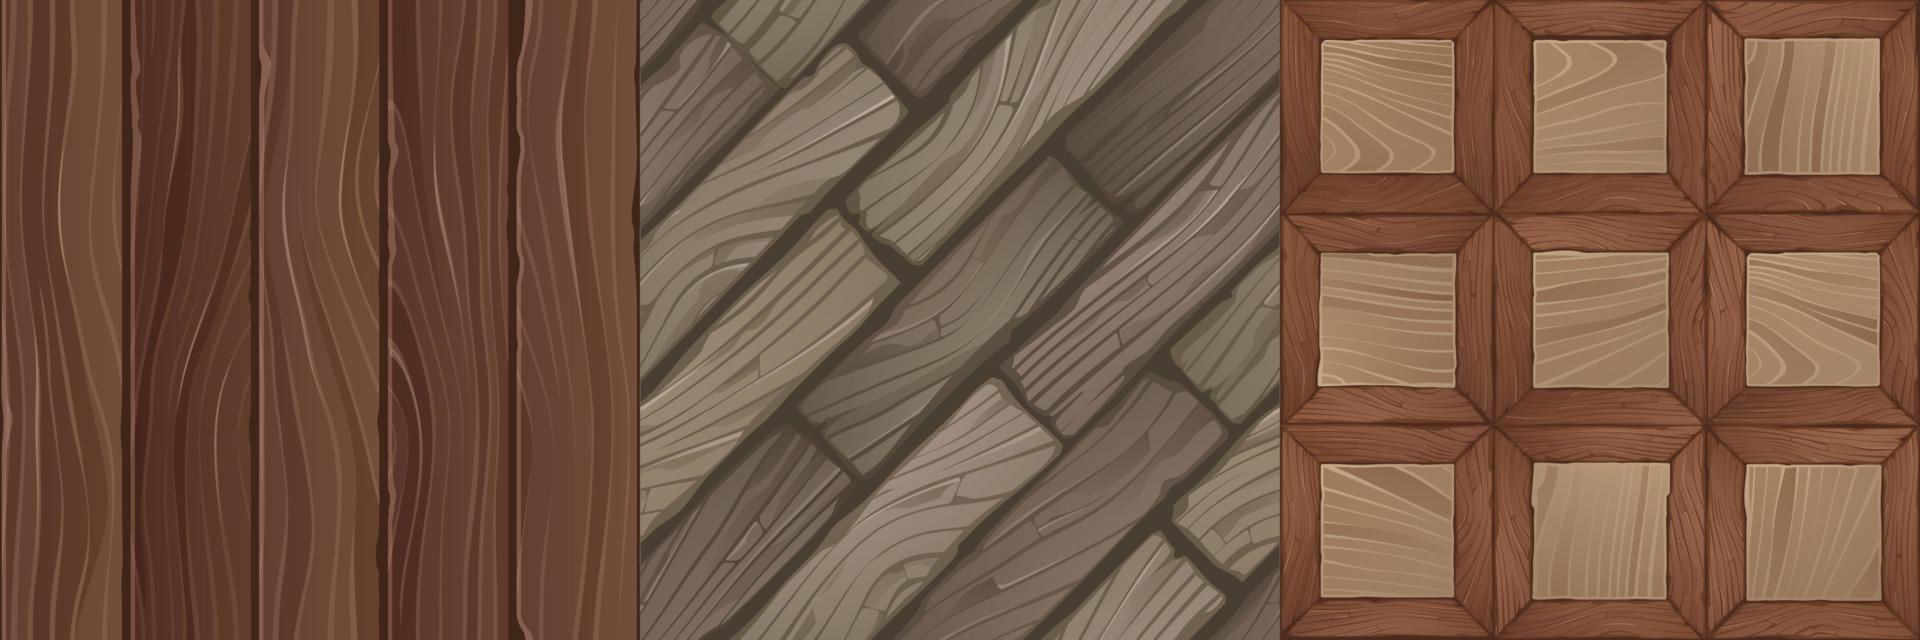 spel texturen van houten planken, bakstenen en panelen vector